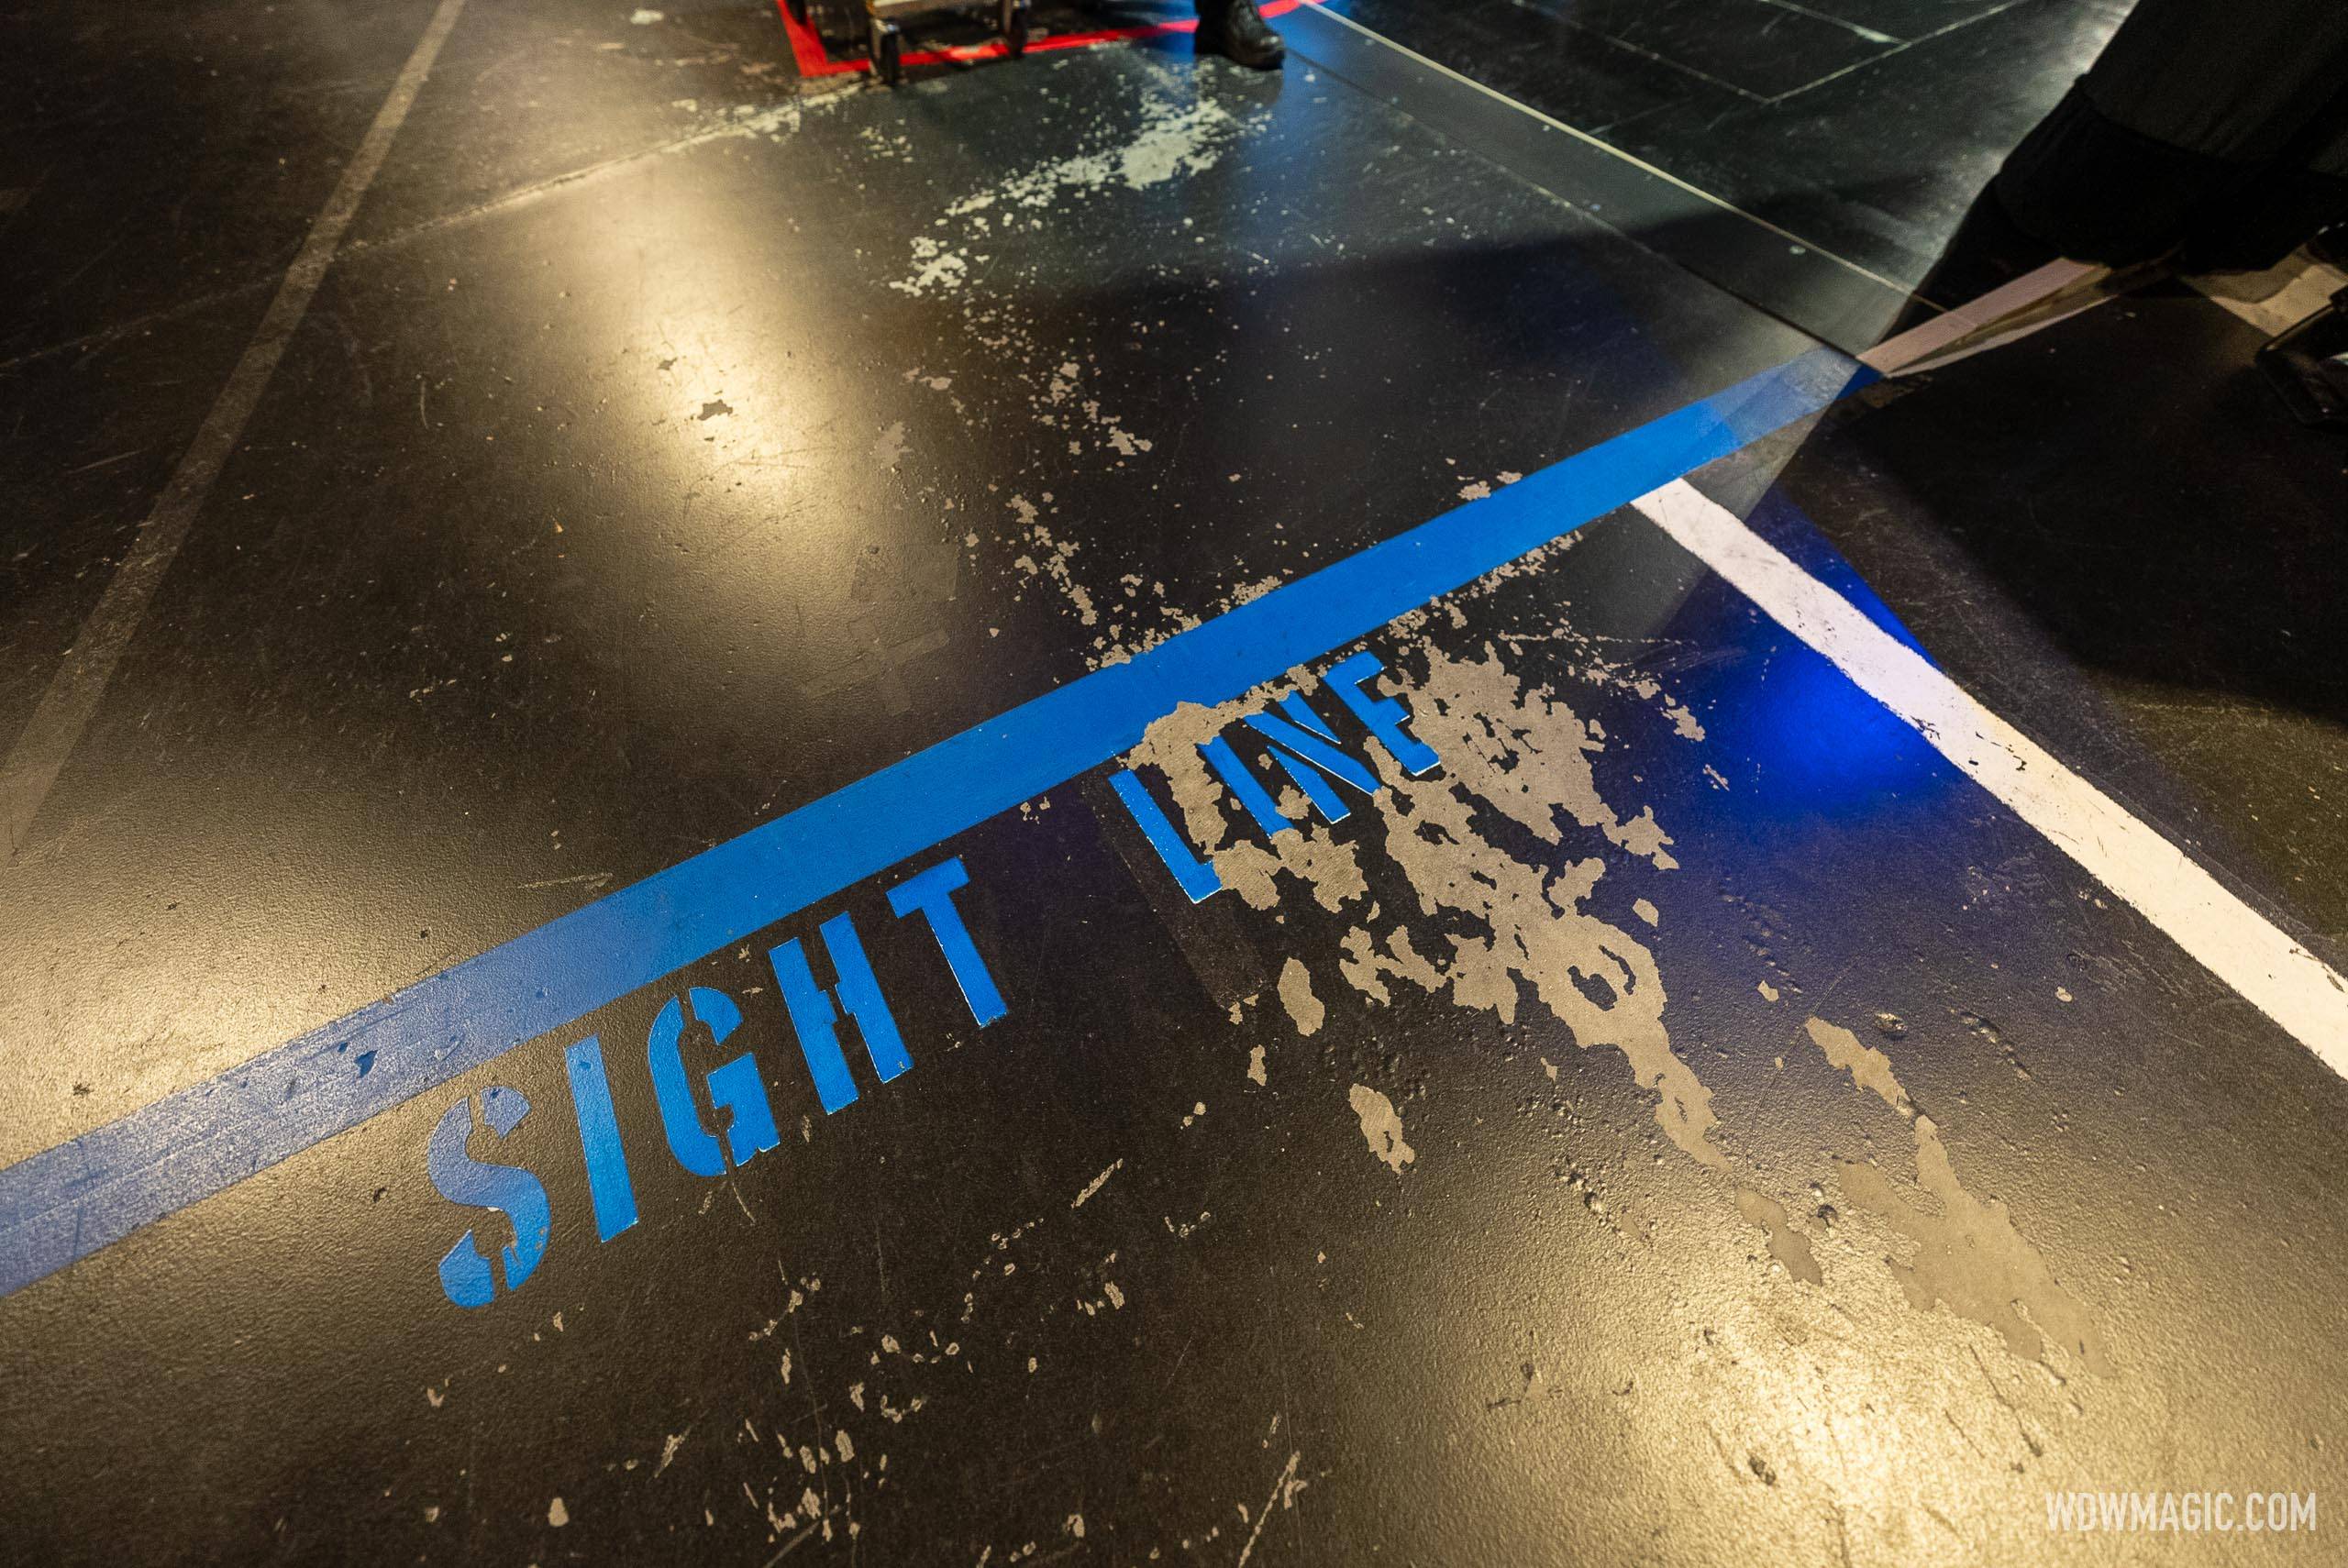 Backstage sightline markers